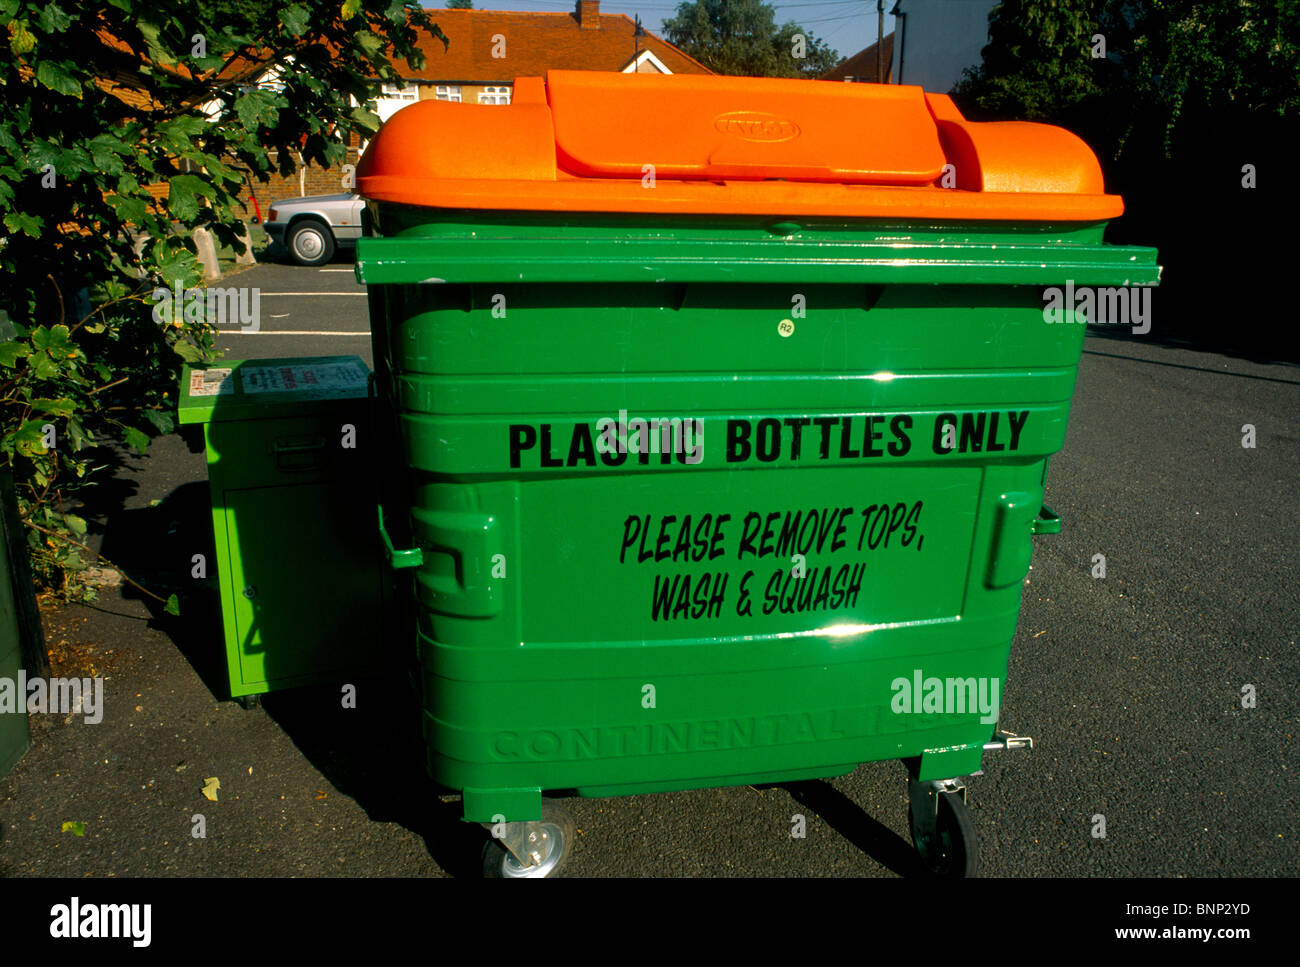 Bac de recyclage pour les bouteilles en plastique Banque D'Images